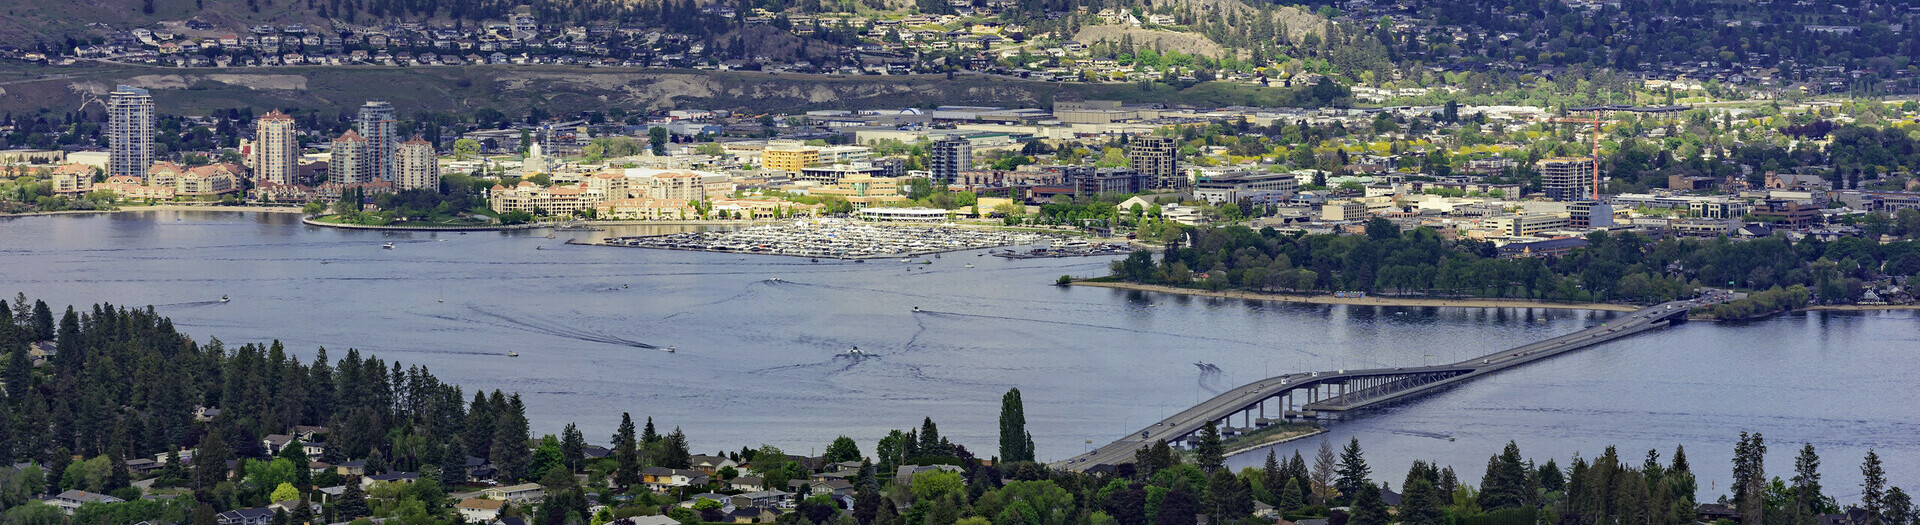 Aerial view of Kelowna British Columbia. 